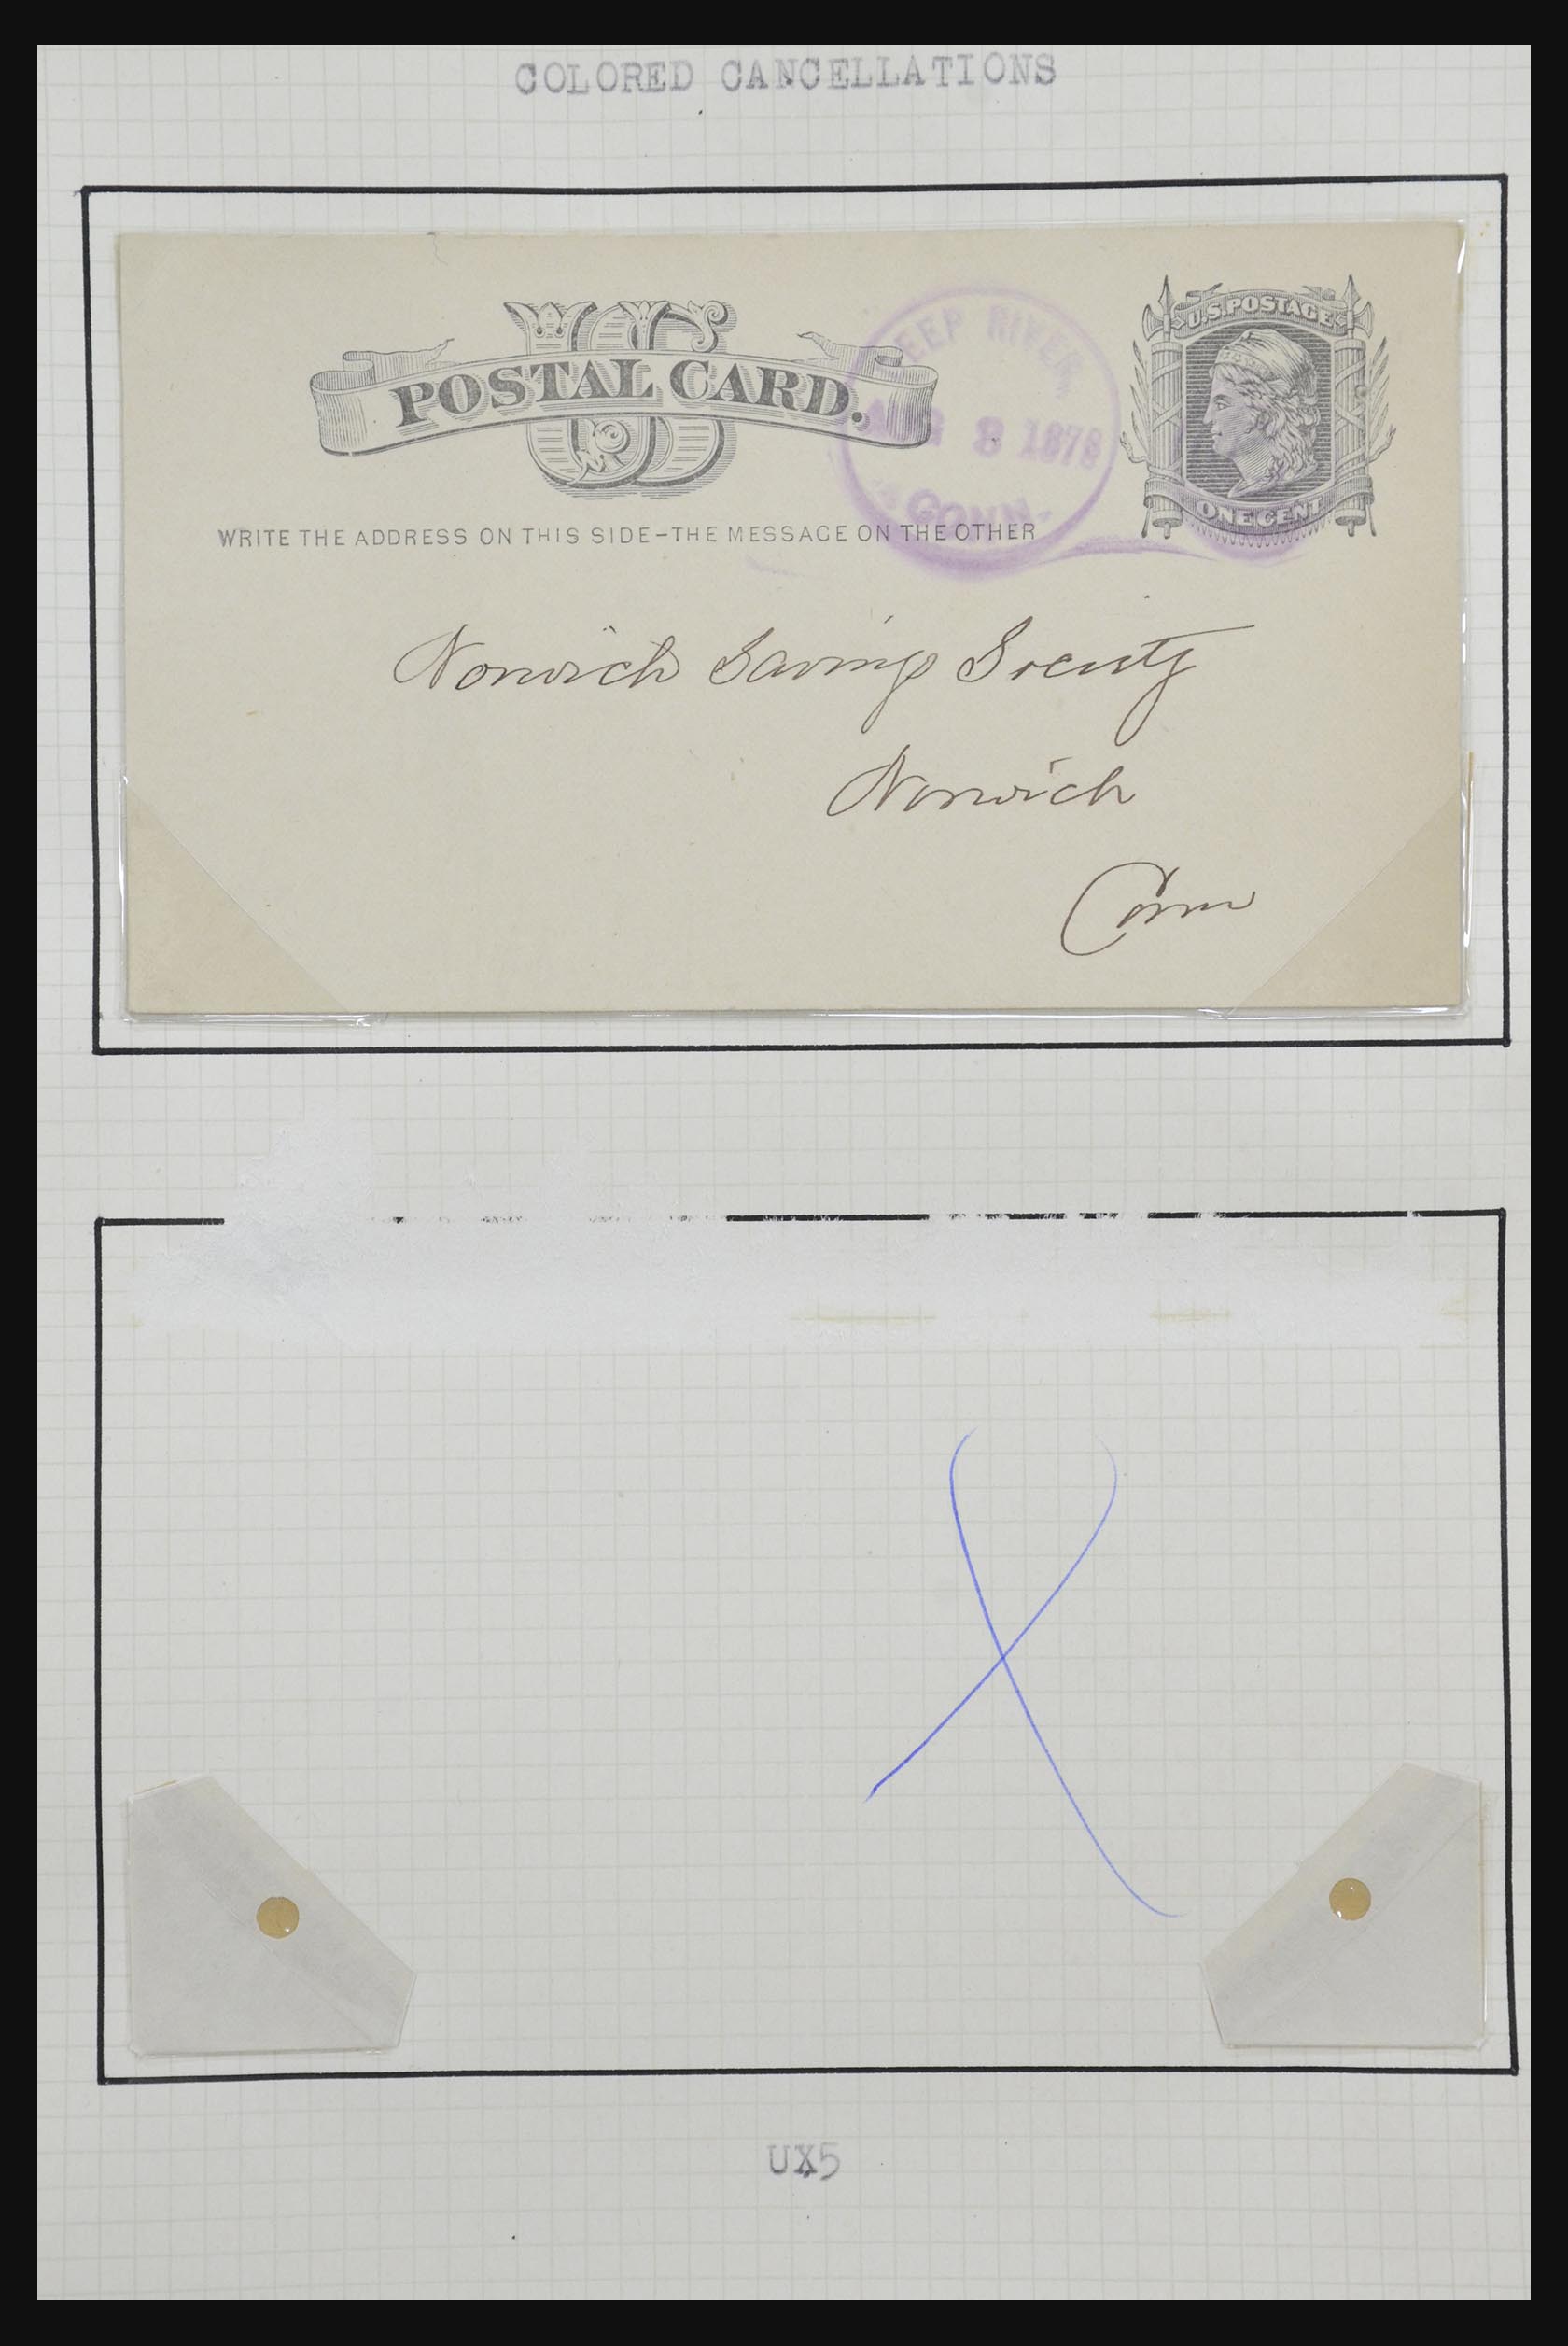 32209 029 - 32209 USA briefkaarten 1873-1950.